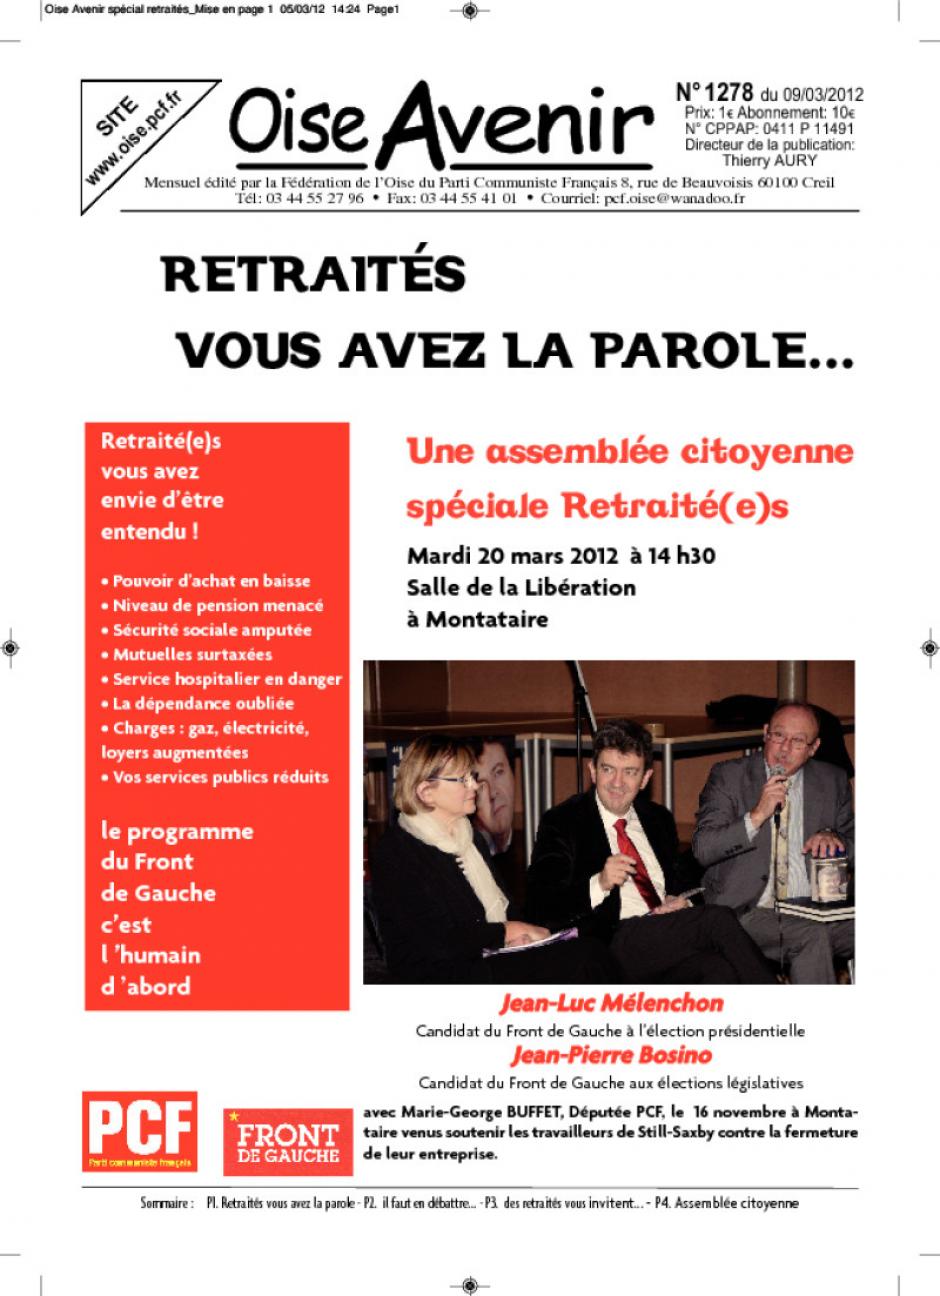 20 mars, Montataire - Assemblée citoyenne du Front de gauche « Retraité-e-s »